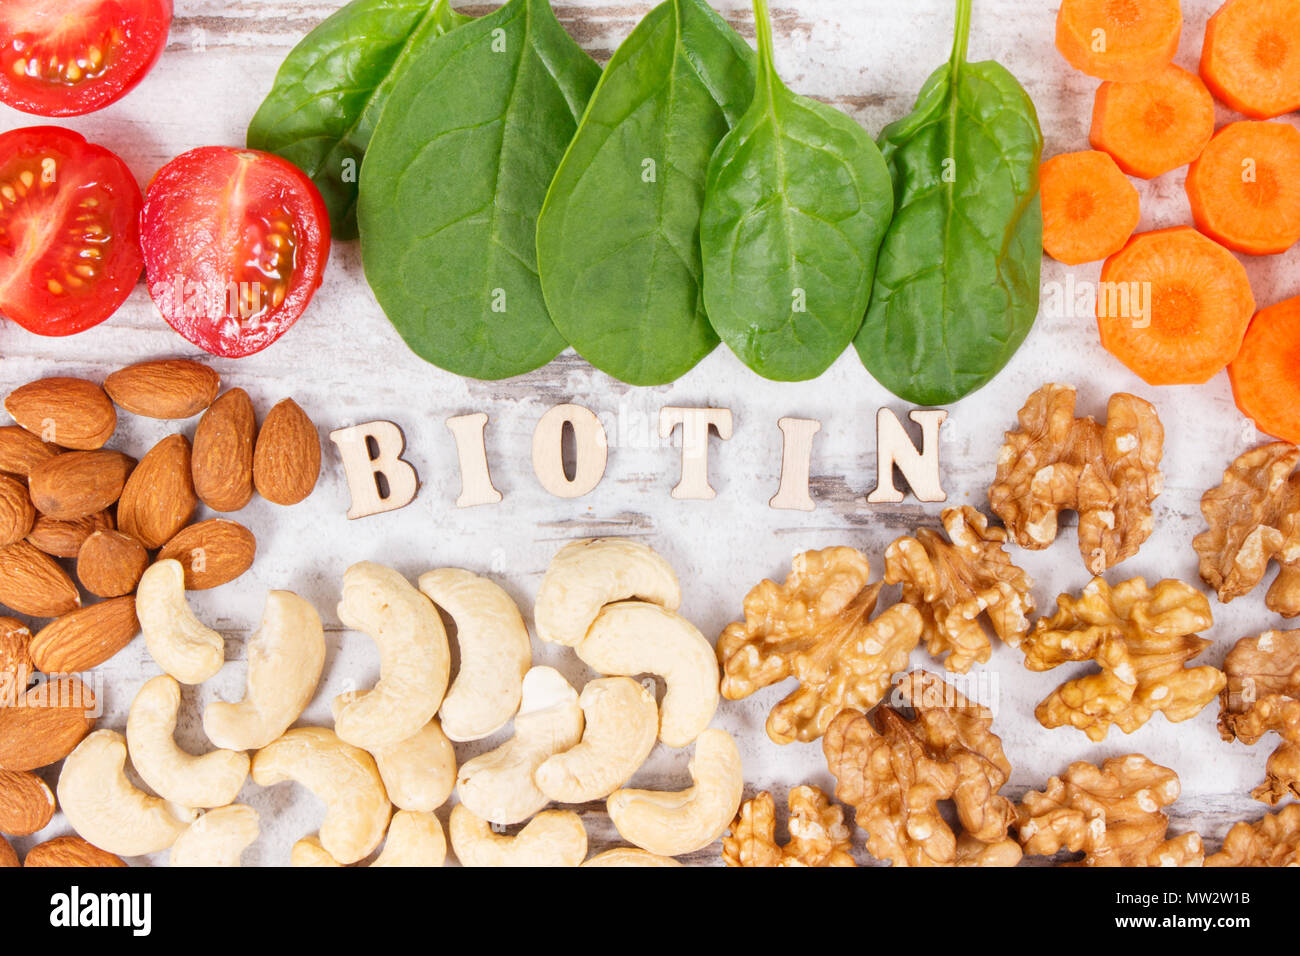 Inscripción de la biotina con productos nutritivos que contienen vitamina B7 y fibra dietética, fuentes naturales de minerales, concepto de nutrición saludable Foto de stock